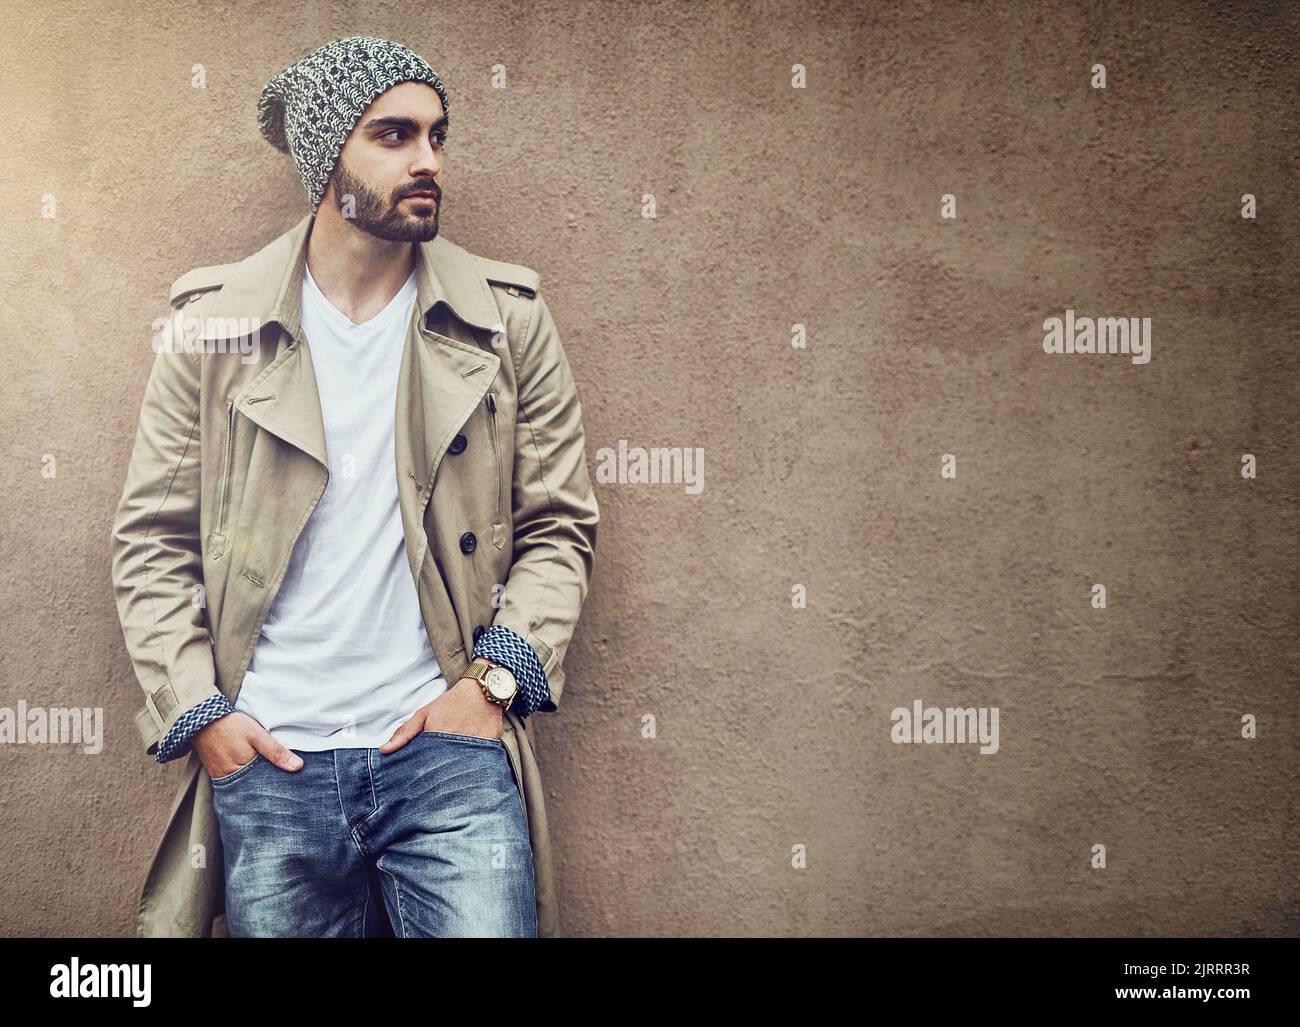 Nichts rundet den Streetwear-Stil ab als Swag. Ein modischer junger Mann, der urbane Kleidung trägt und vor einer braunen Wand posiert. Stockfoto